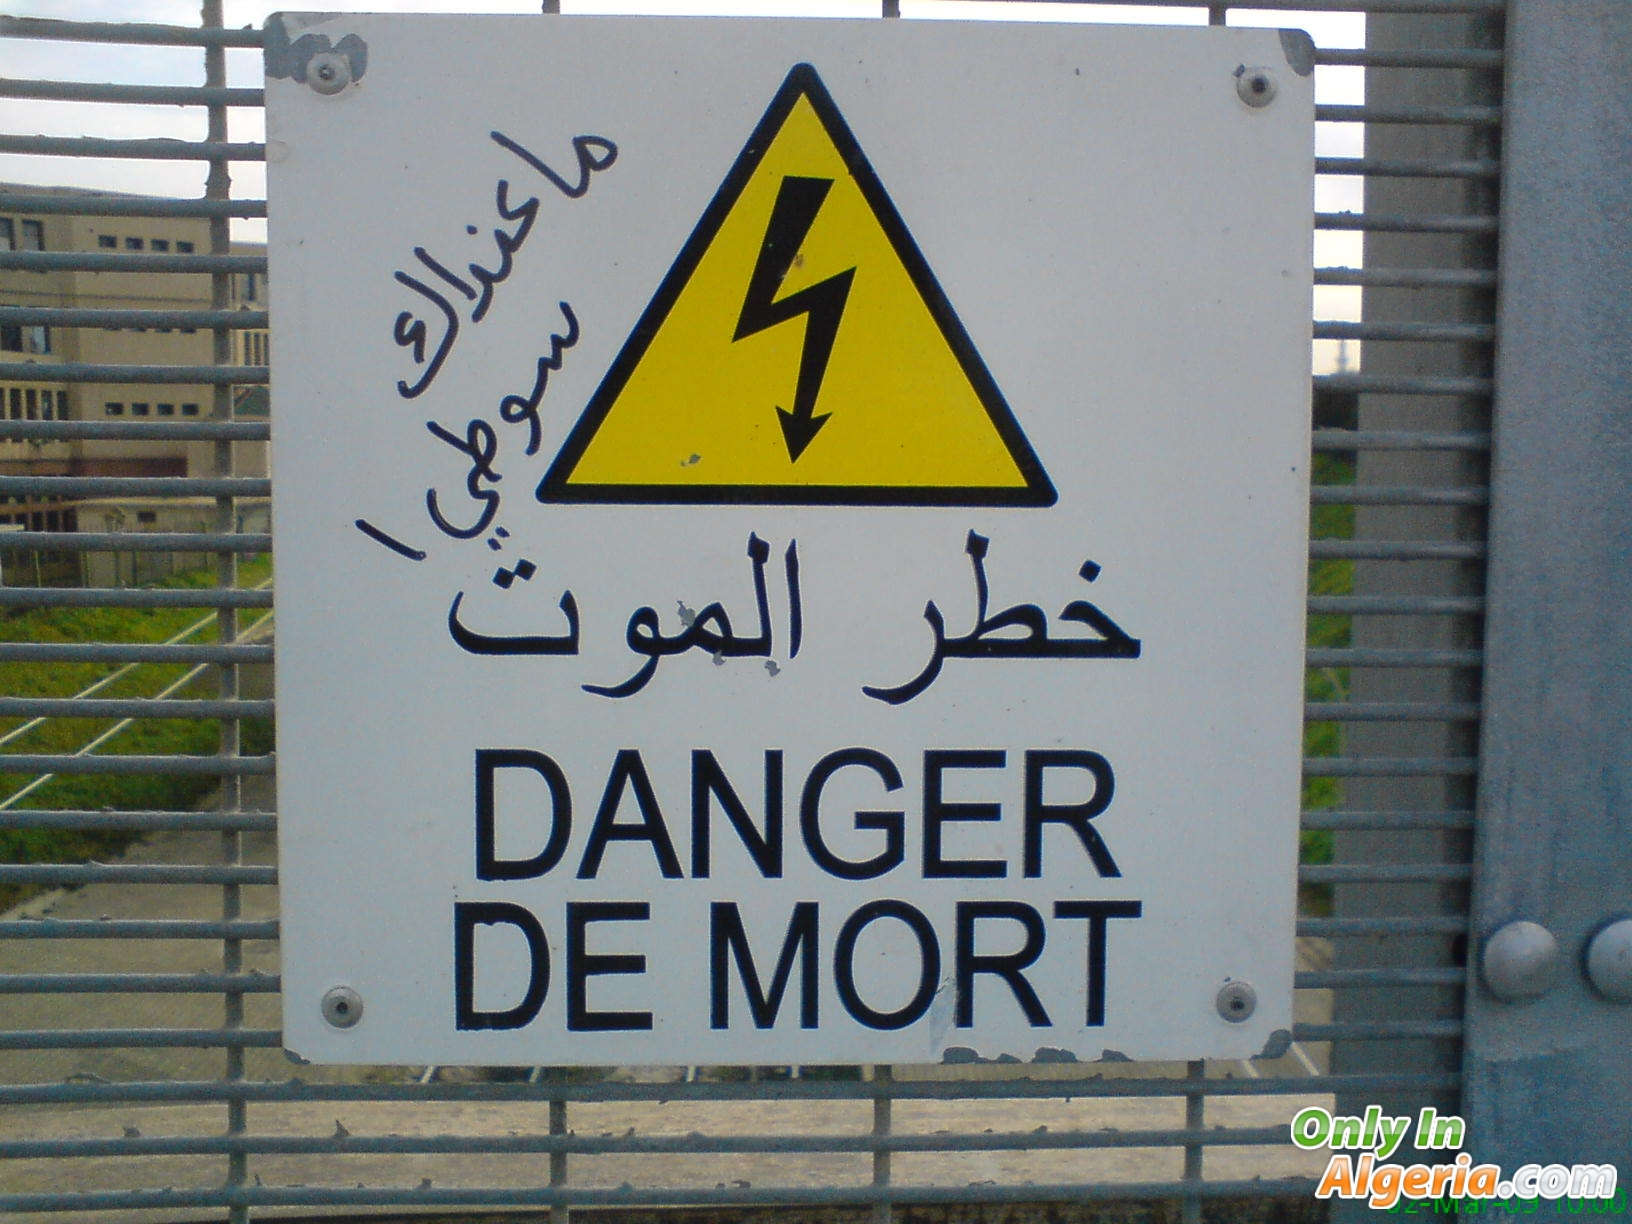 Danger de mort